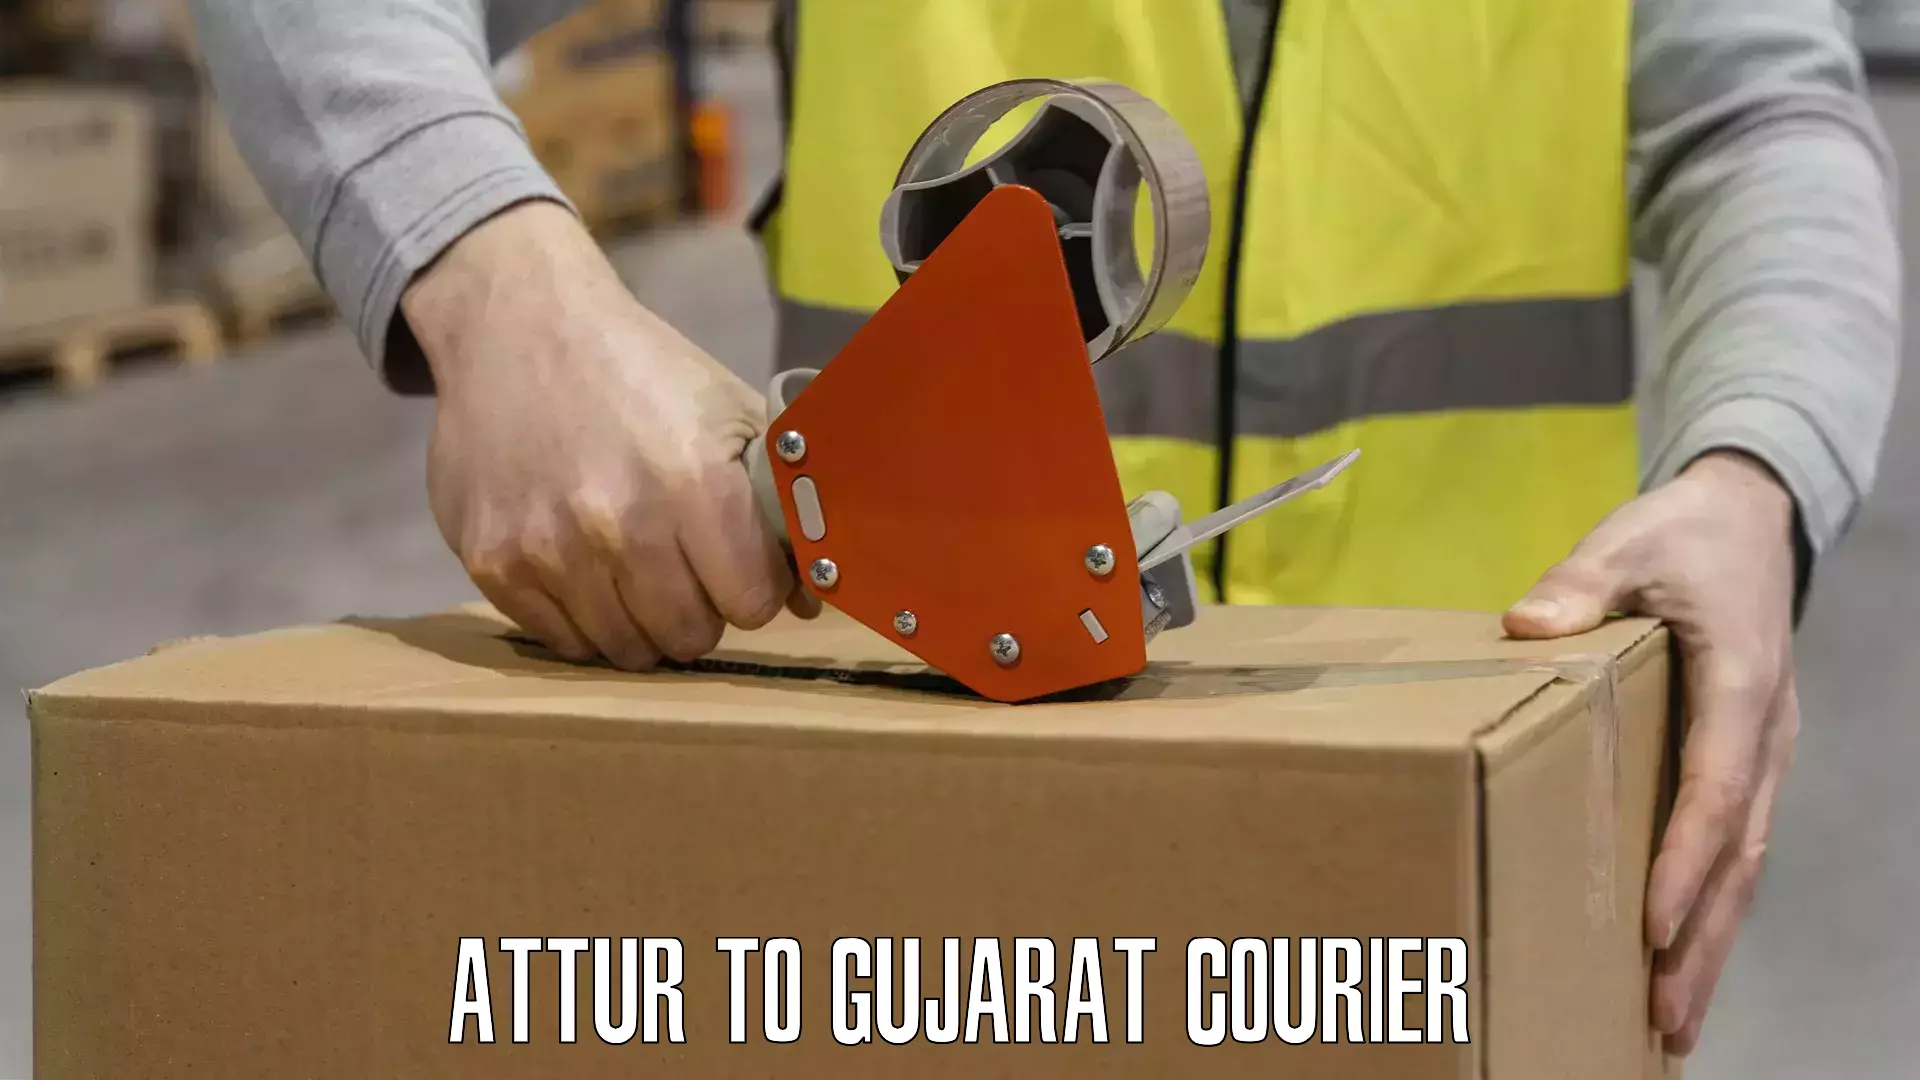 Premium courier services in Attur to Gujarat